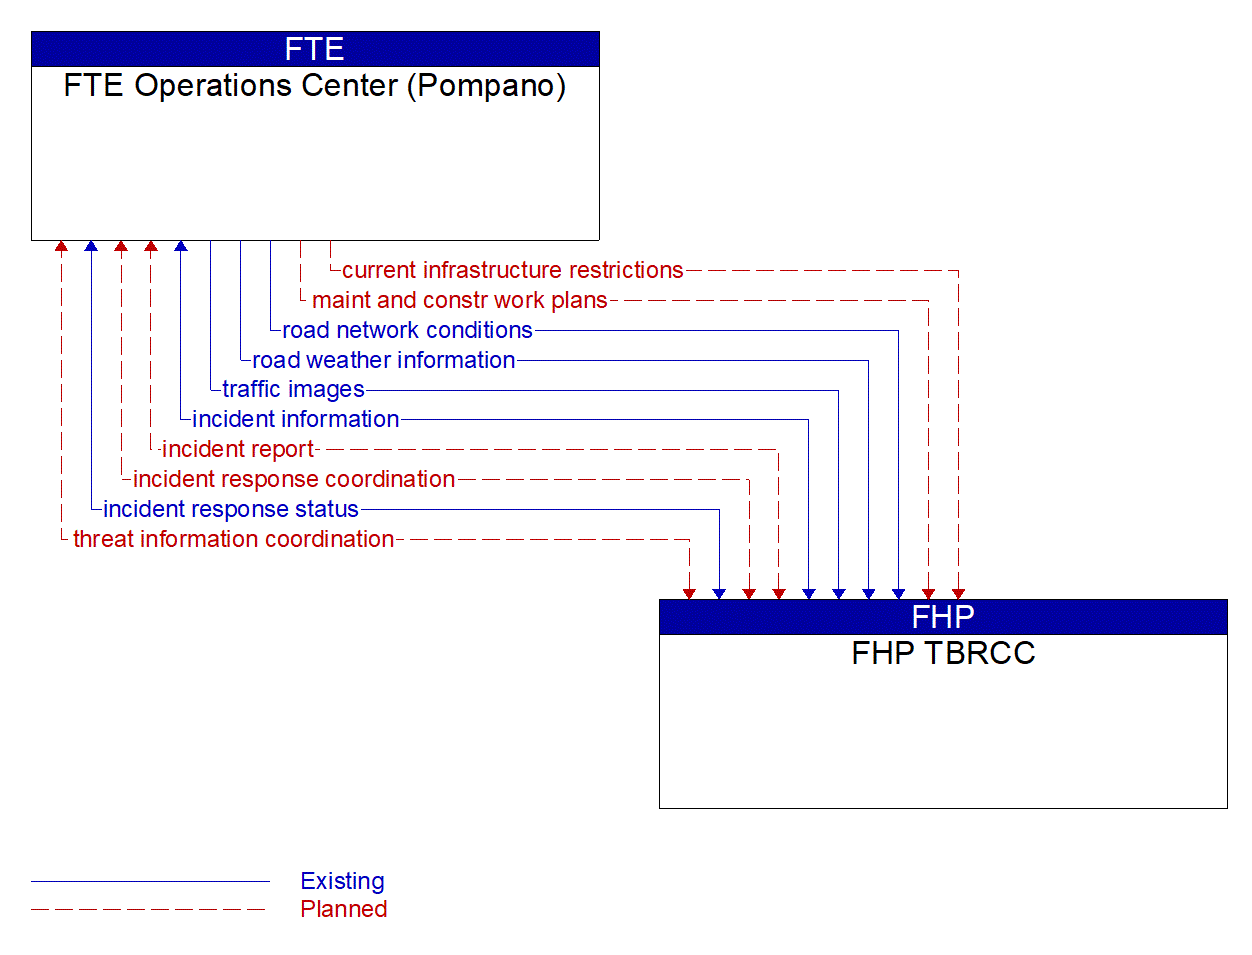 Architecture Flow Diagram: FHP TBRCC <--> FTE Operations Center (Pompano)